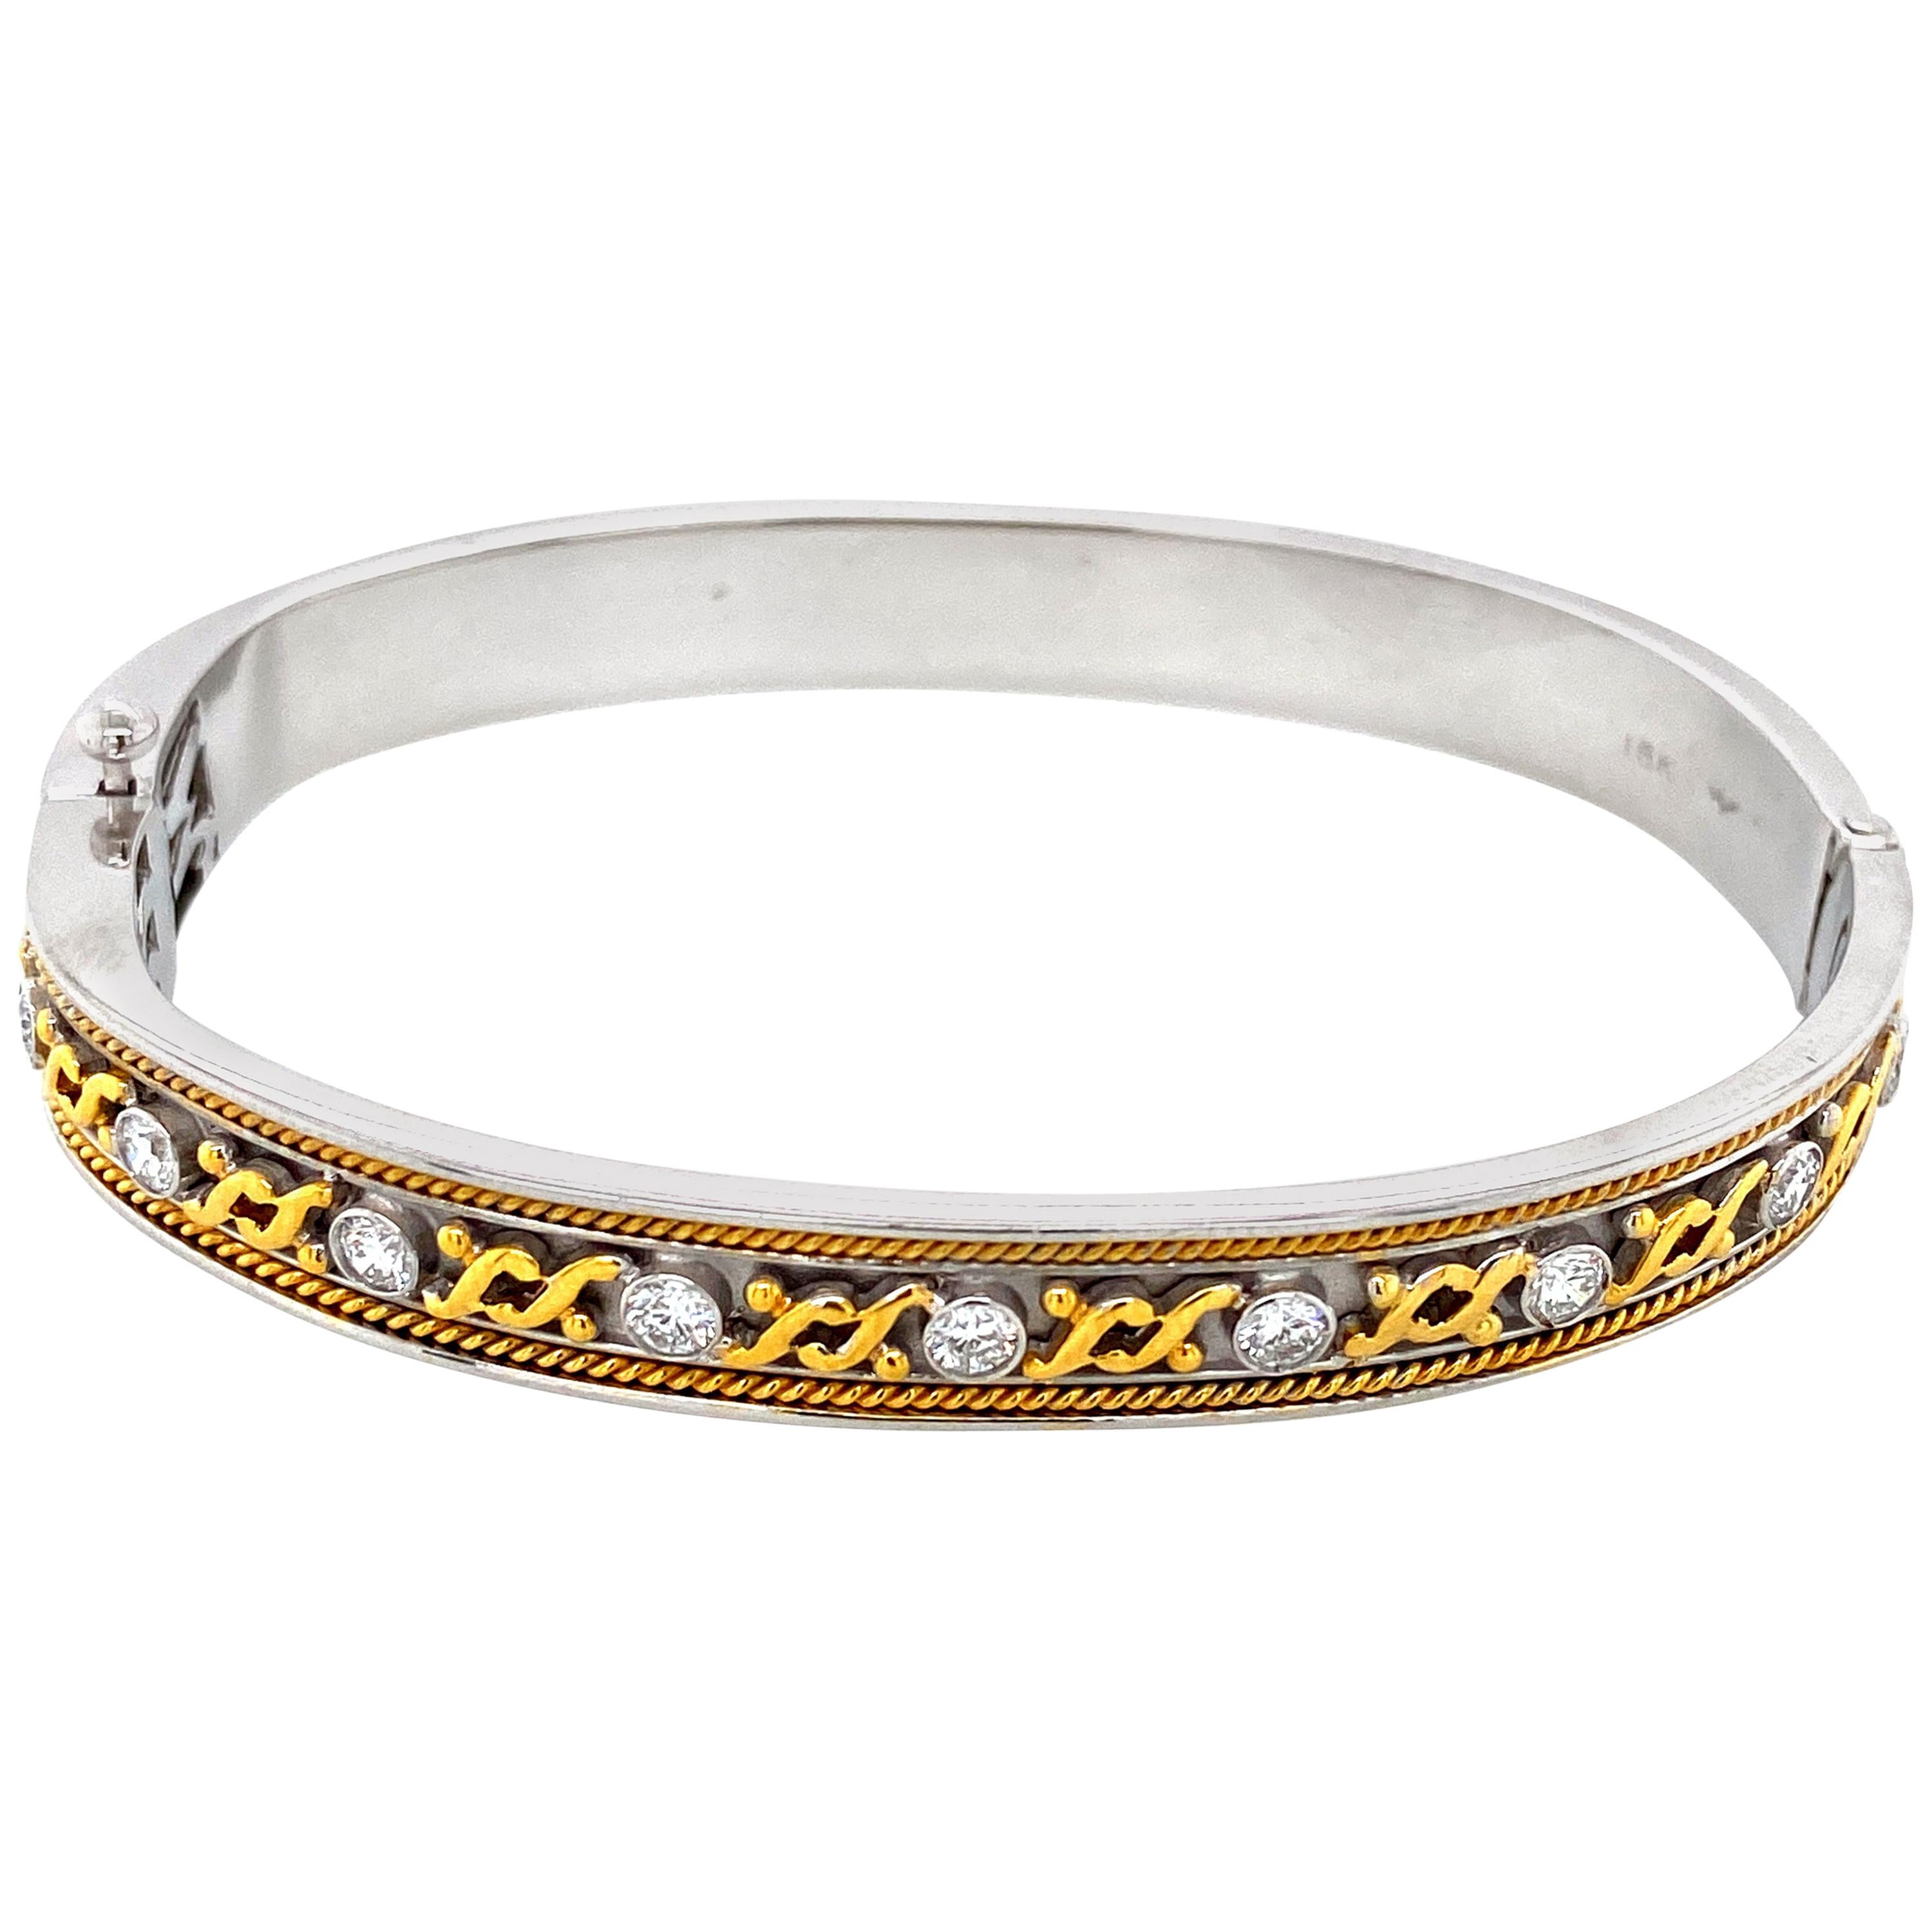 Diamant und Gold Armreif: 

Ein Art-Deco-inspiriertes Armband aus Diamanten und Gold mit detaillierter Handwerkskunst, um sicherzustellen, dass das Armband auffällt! Es ist selten, dass man Golddetails in solcher Feinheit sieht, wie bei diesem